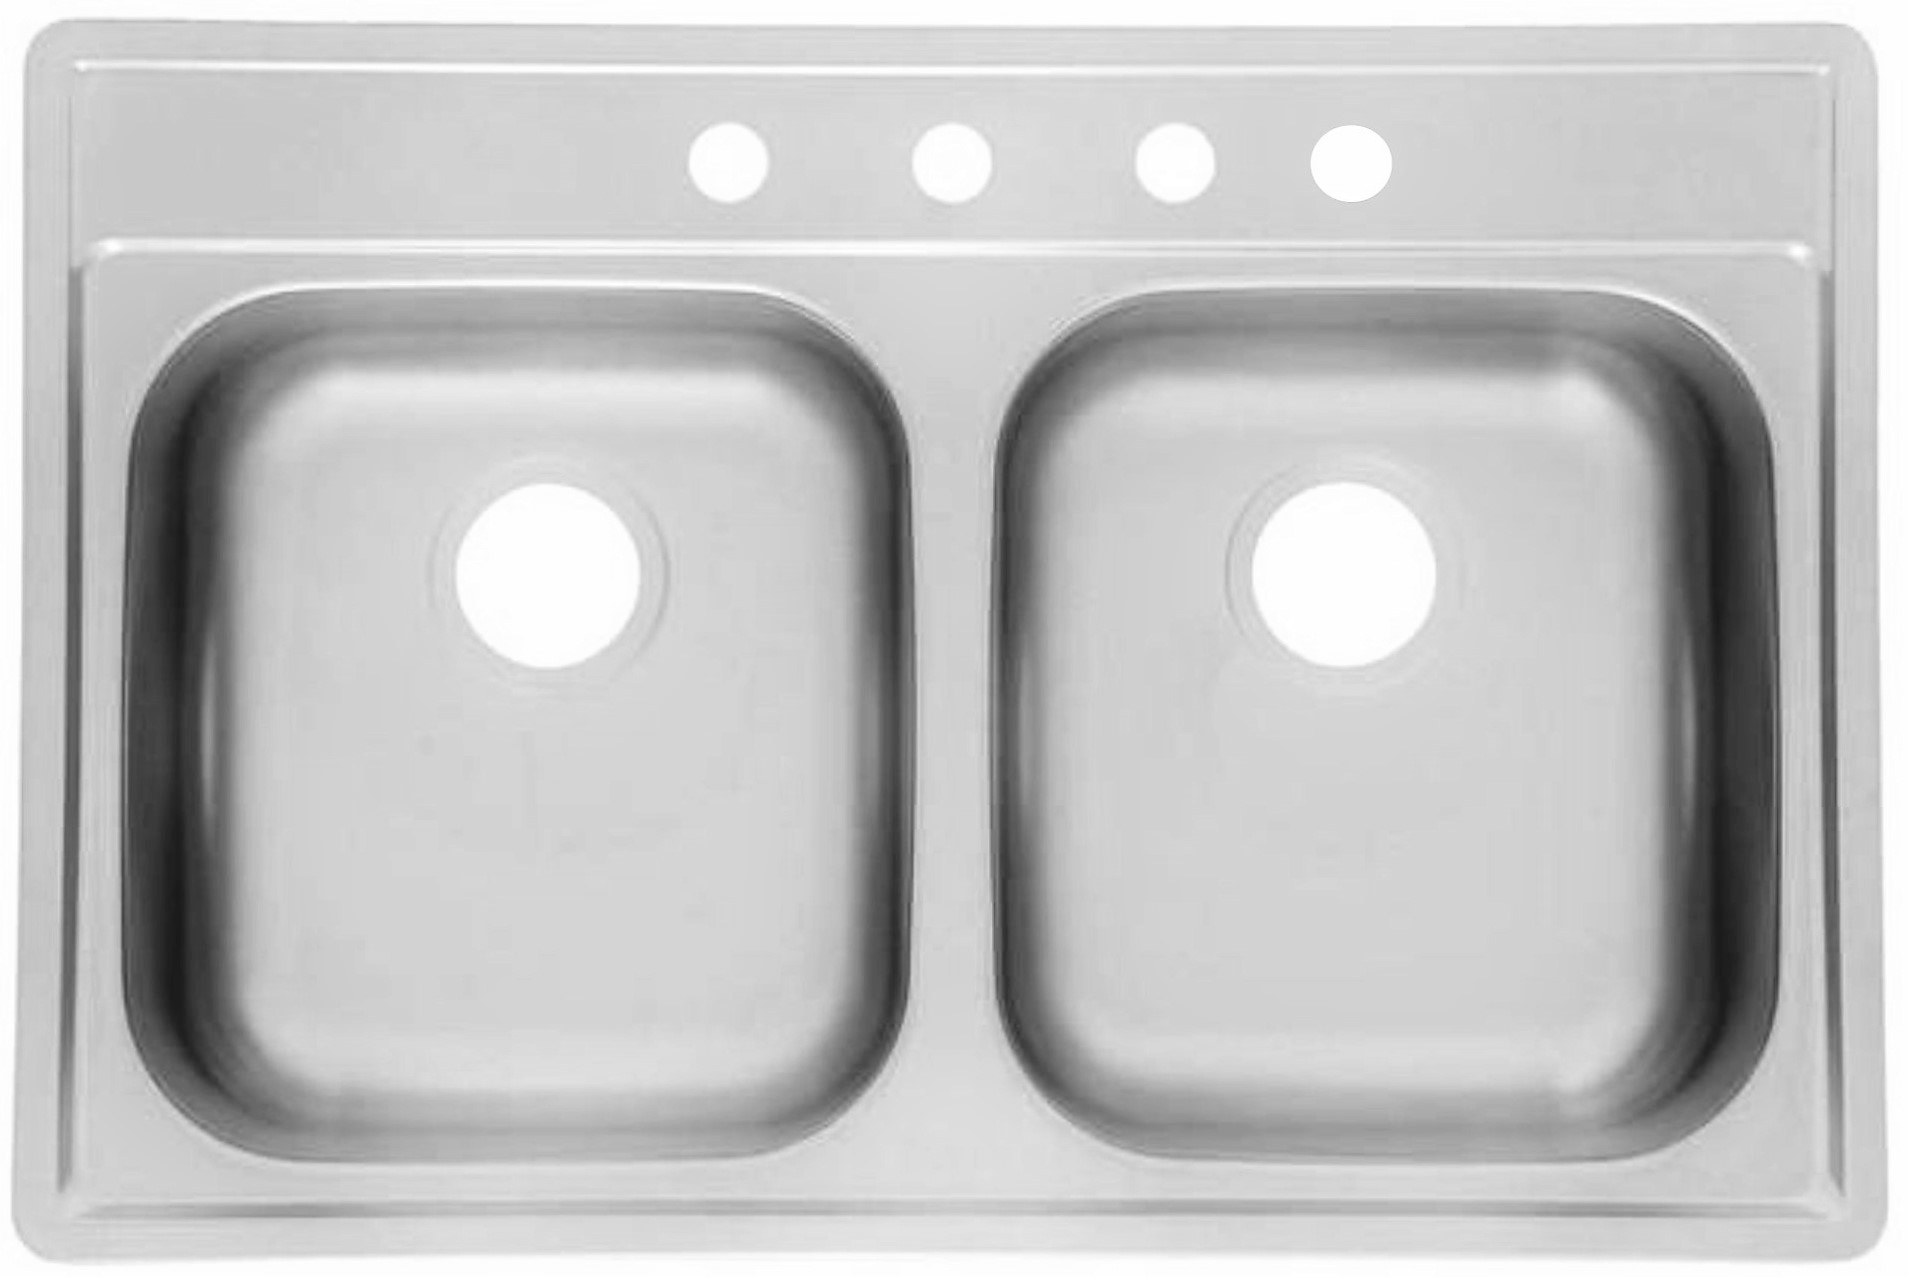 33x22 stainless steel kitchen sink undermount